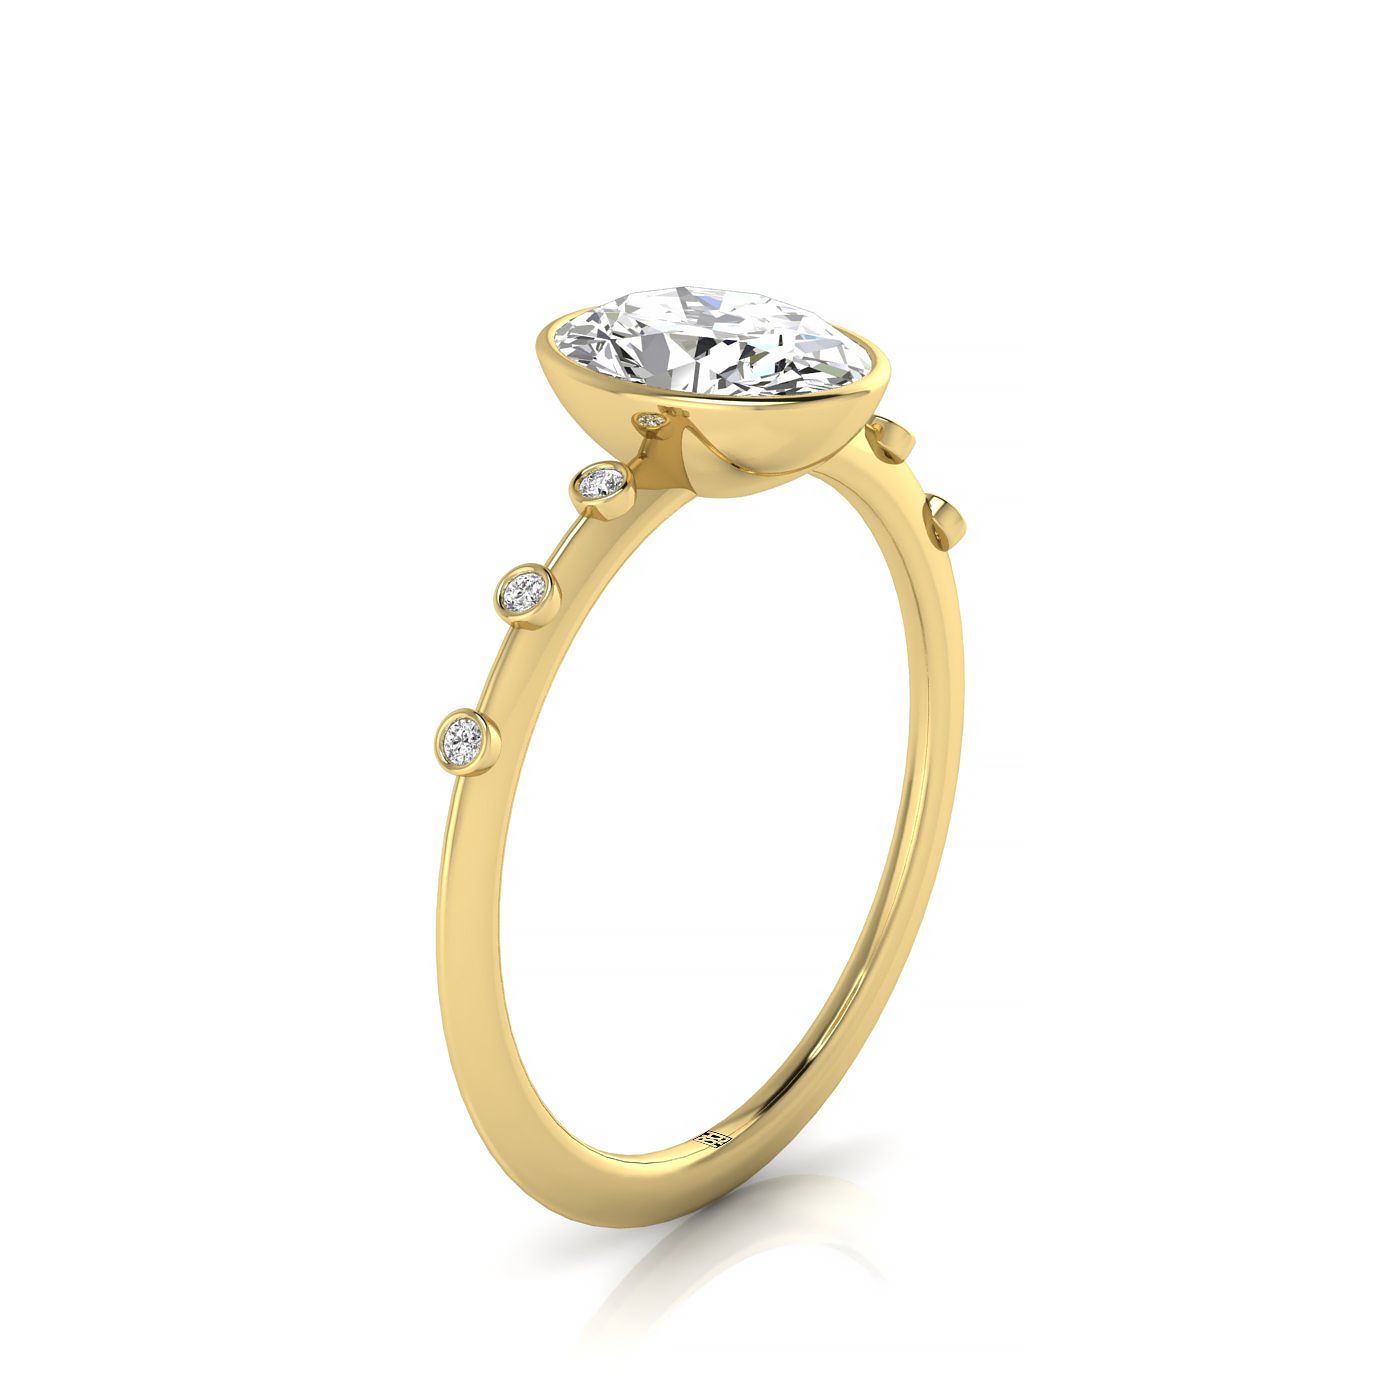 14ky Bezel Set Oval Engagement Ring With 6 Bezel Set Round Diamonds On Shank